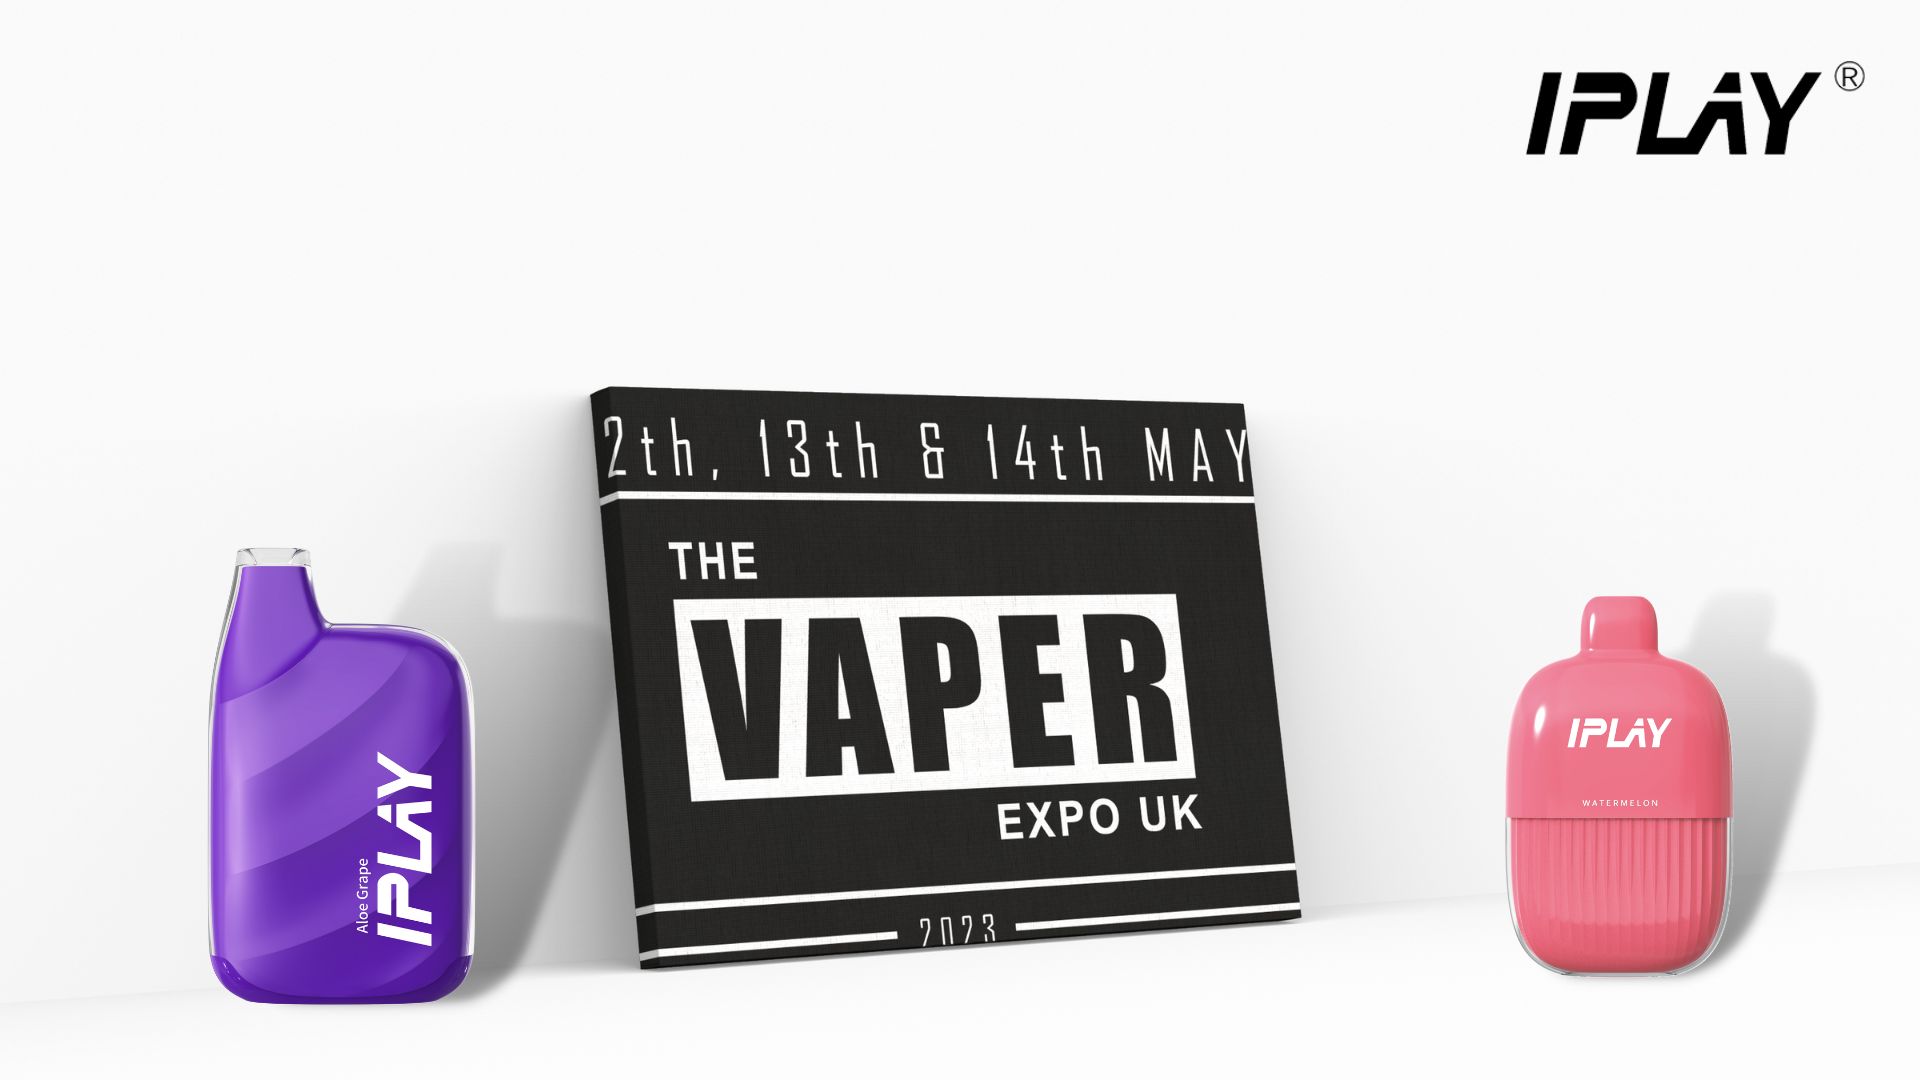 IPLAY's volutpat in Vaper Expo UK MMXXIII: Detectio Innovatio et Excellentia